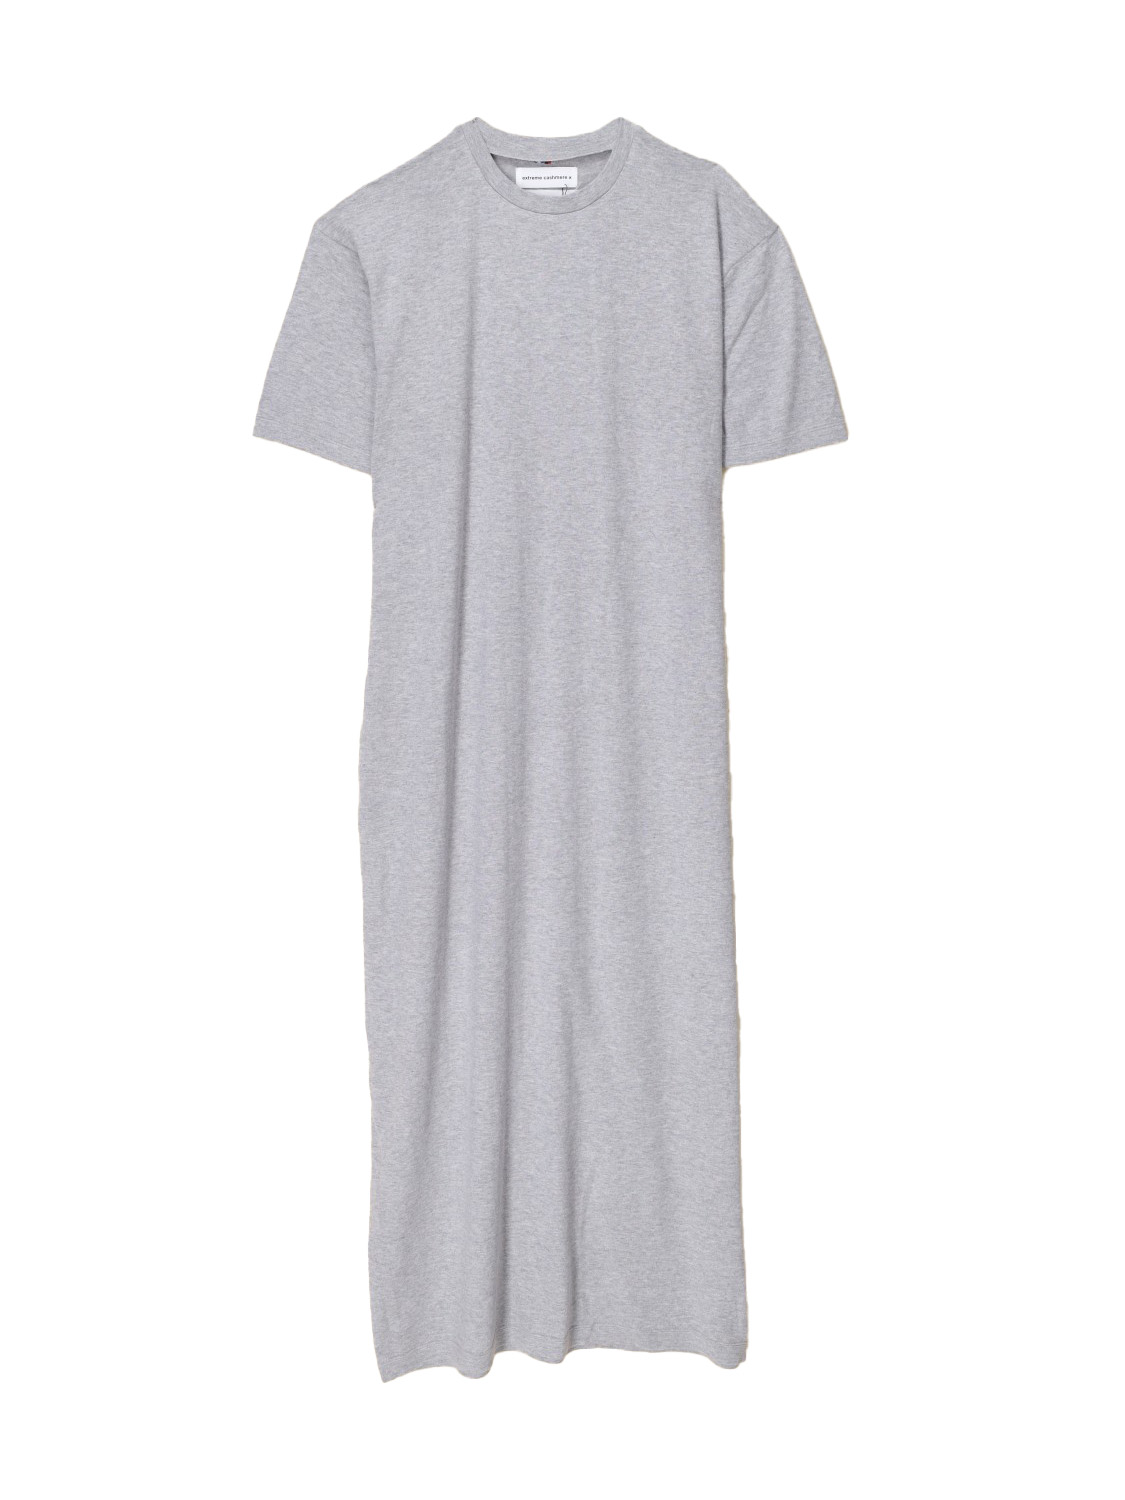 N°321 Kris – Oversized T-Shirt-Kleid aus Kaschmir-Baumwoll-Mix 